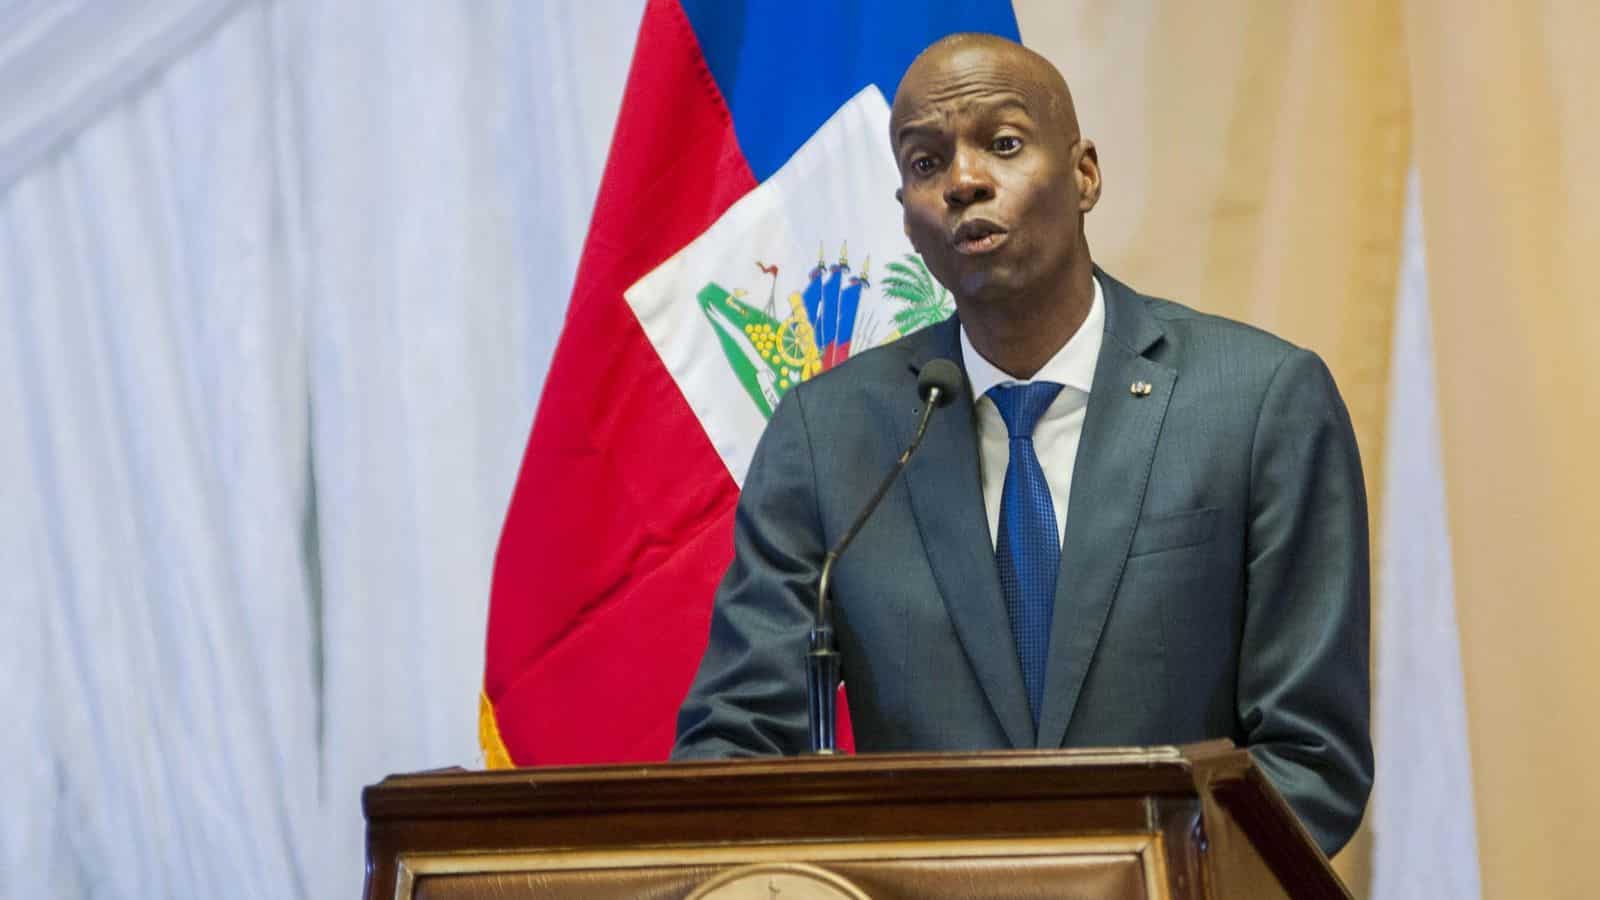 Asesinado a tiros en su casa el presidente de Haití